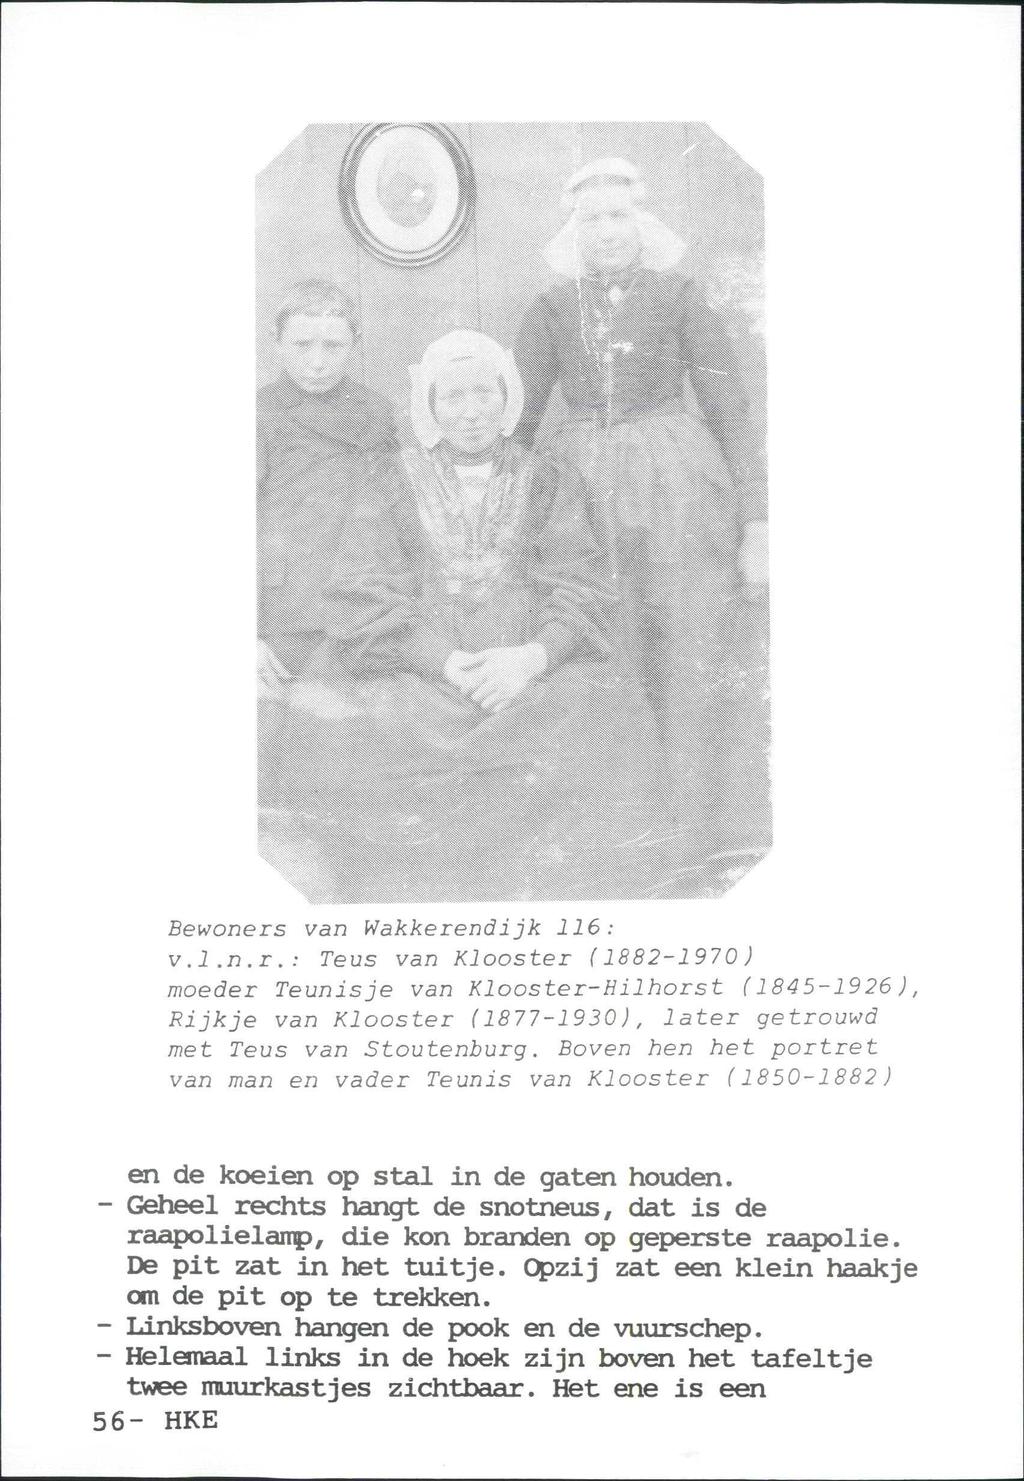 Bewoners van Wakkerendijk 116: v.l.n.r.: Teus van Klooster (1882-1970 ) moeder Teunisje van Klooster-Hilhorst (1845-1926), Rijkje van Klooster (1877-1930), later getrouwd met Teus van Stoutenburg.